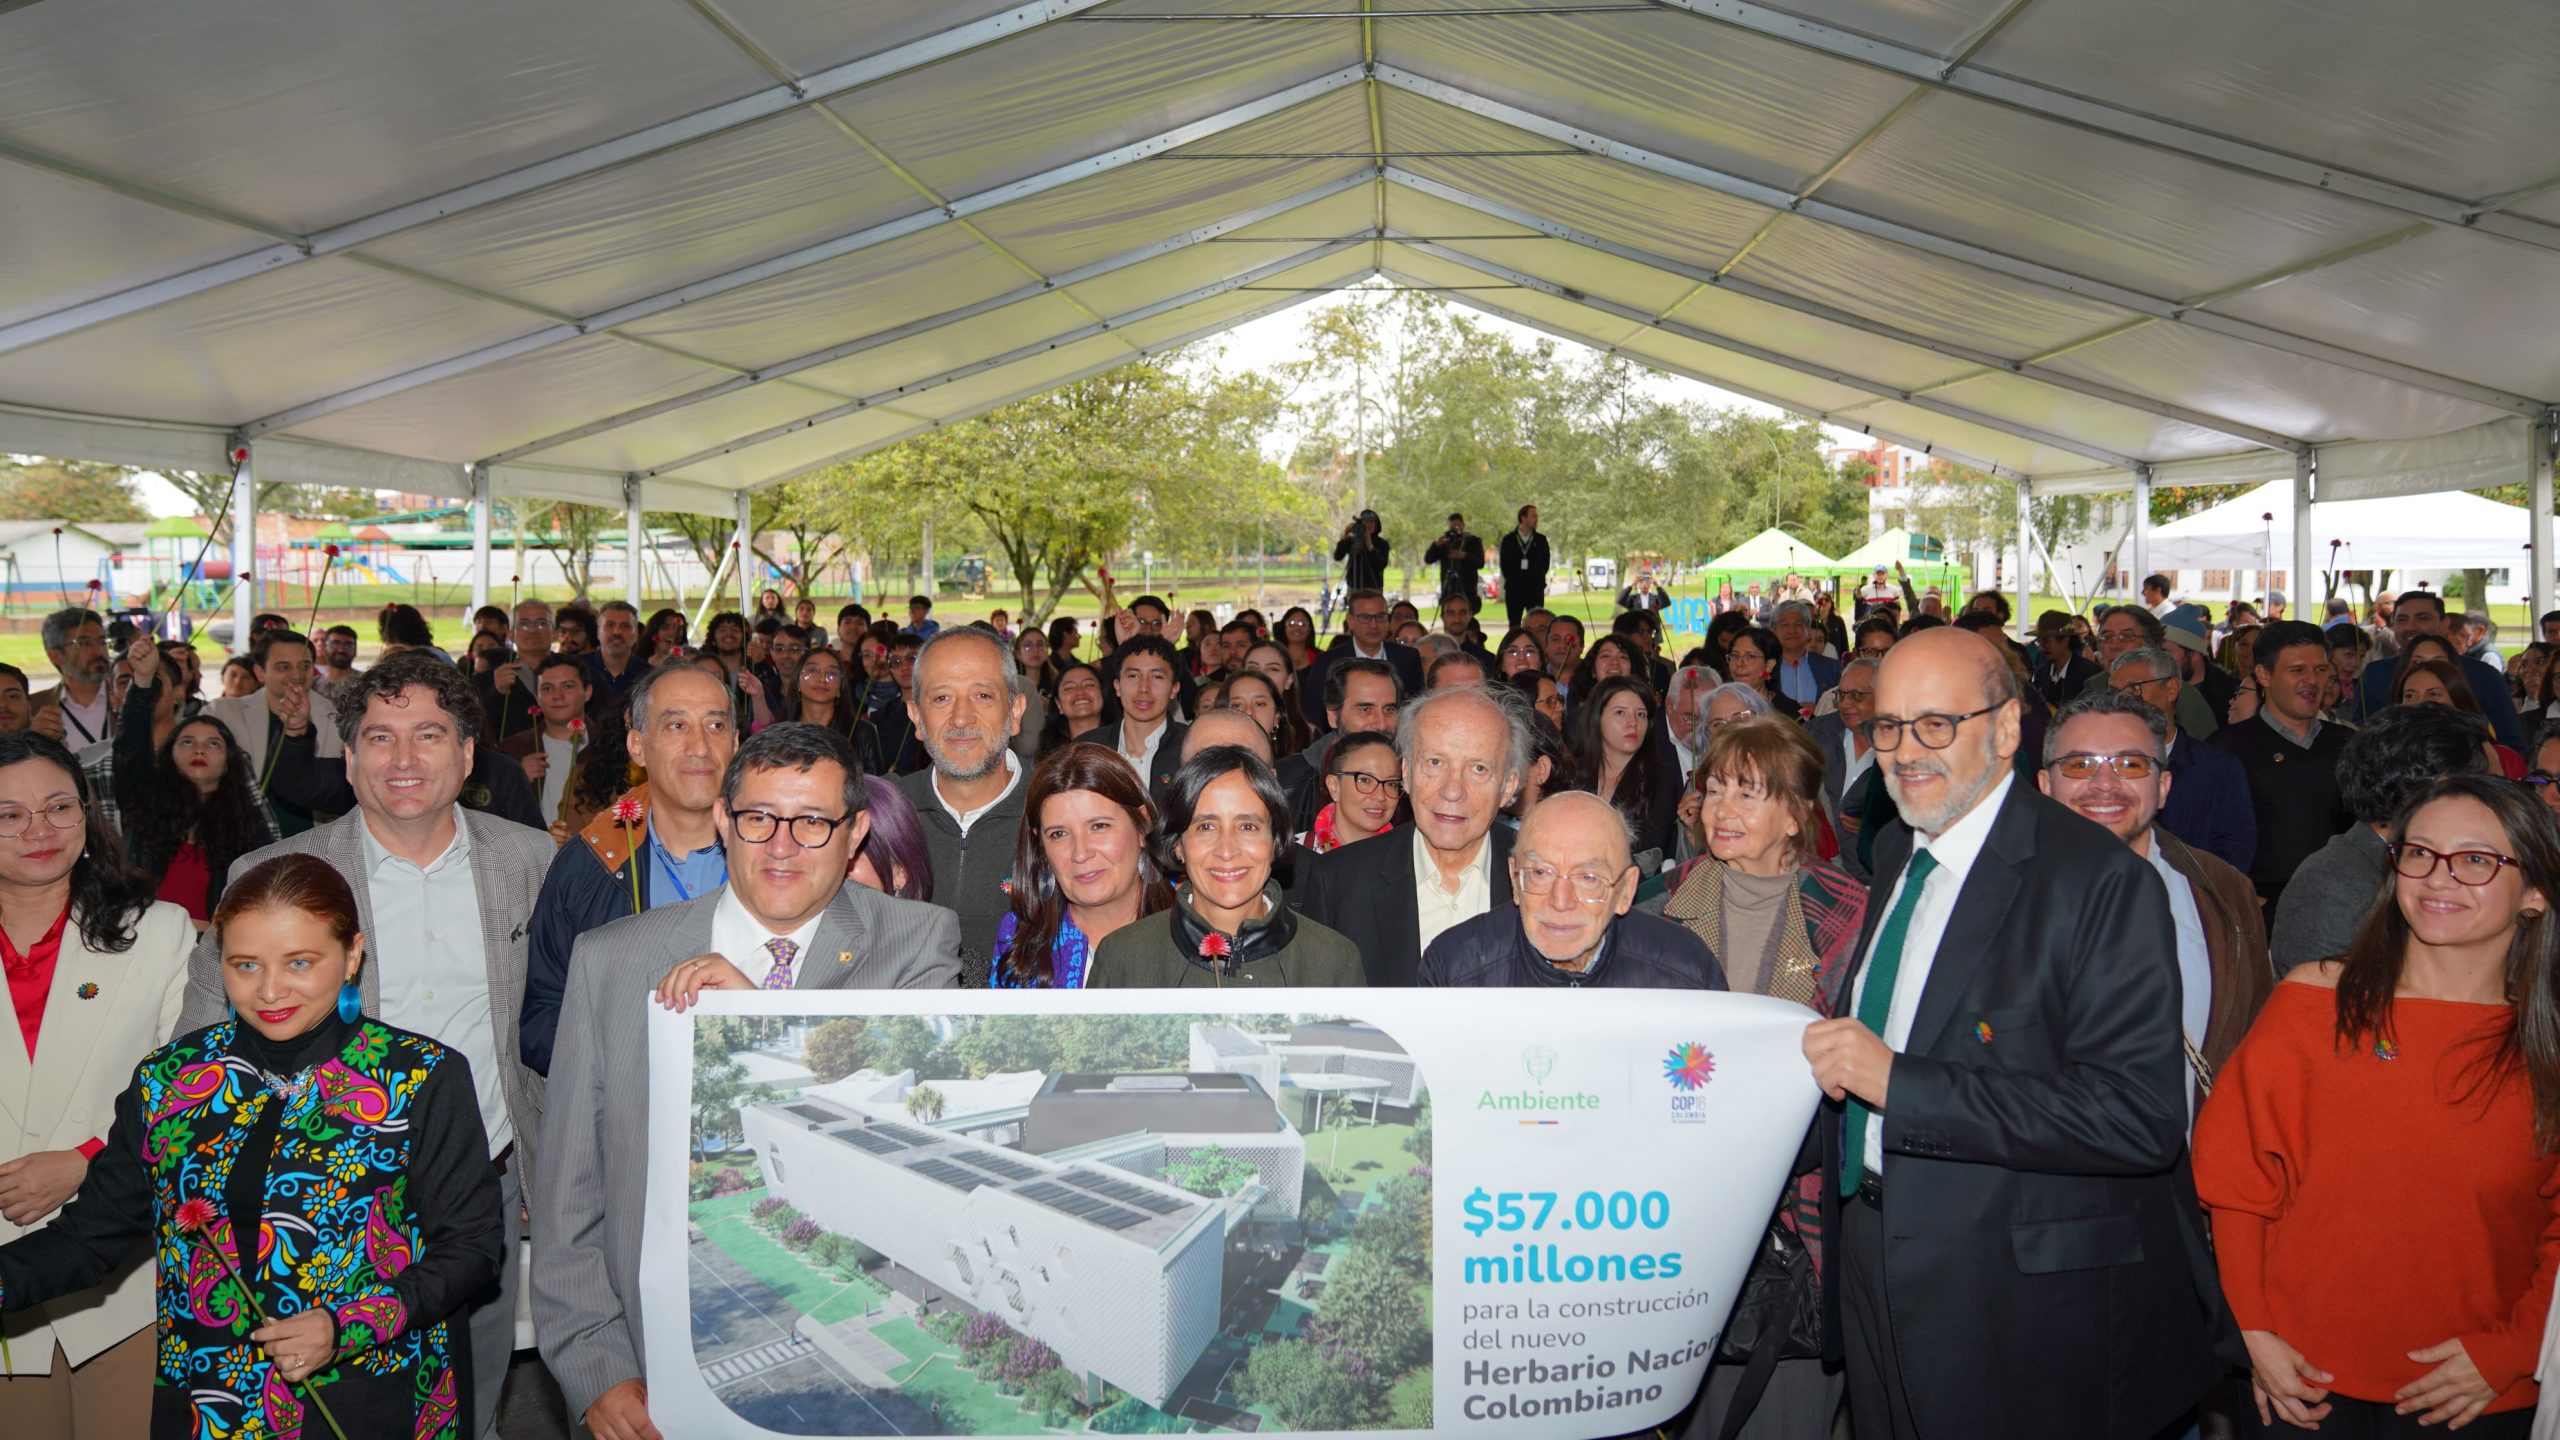 57.000 millones de pesos para el nuevo edificio del Herbario Nacional Colombiano